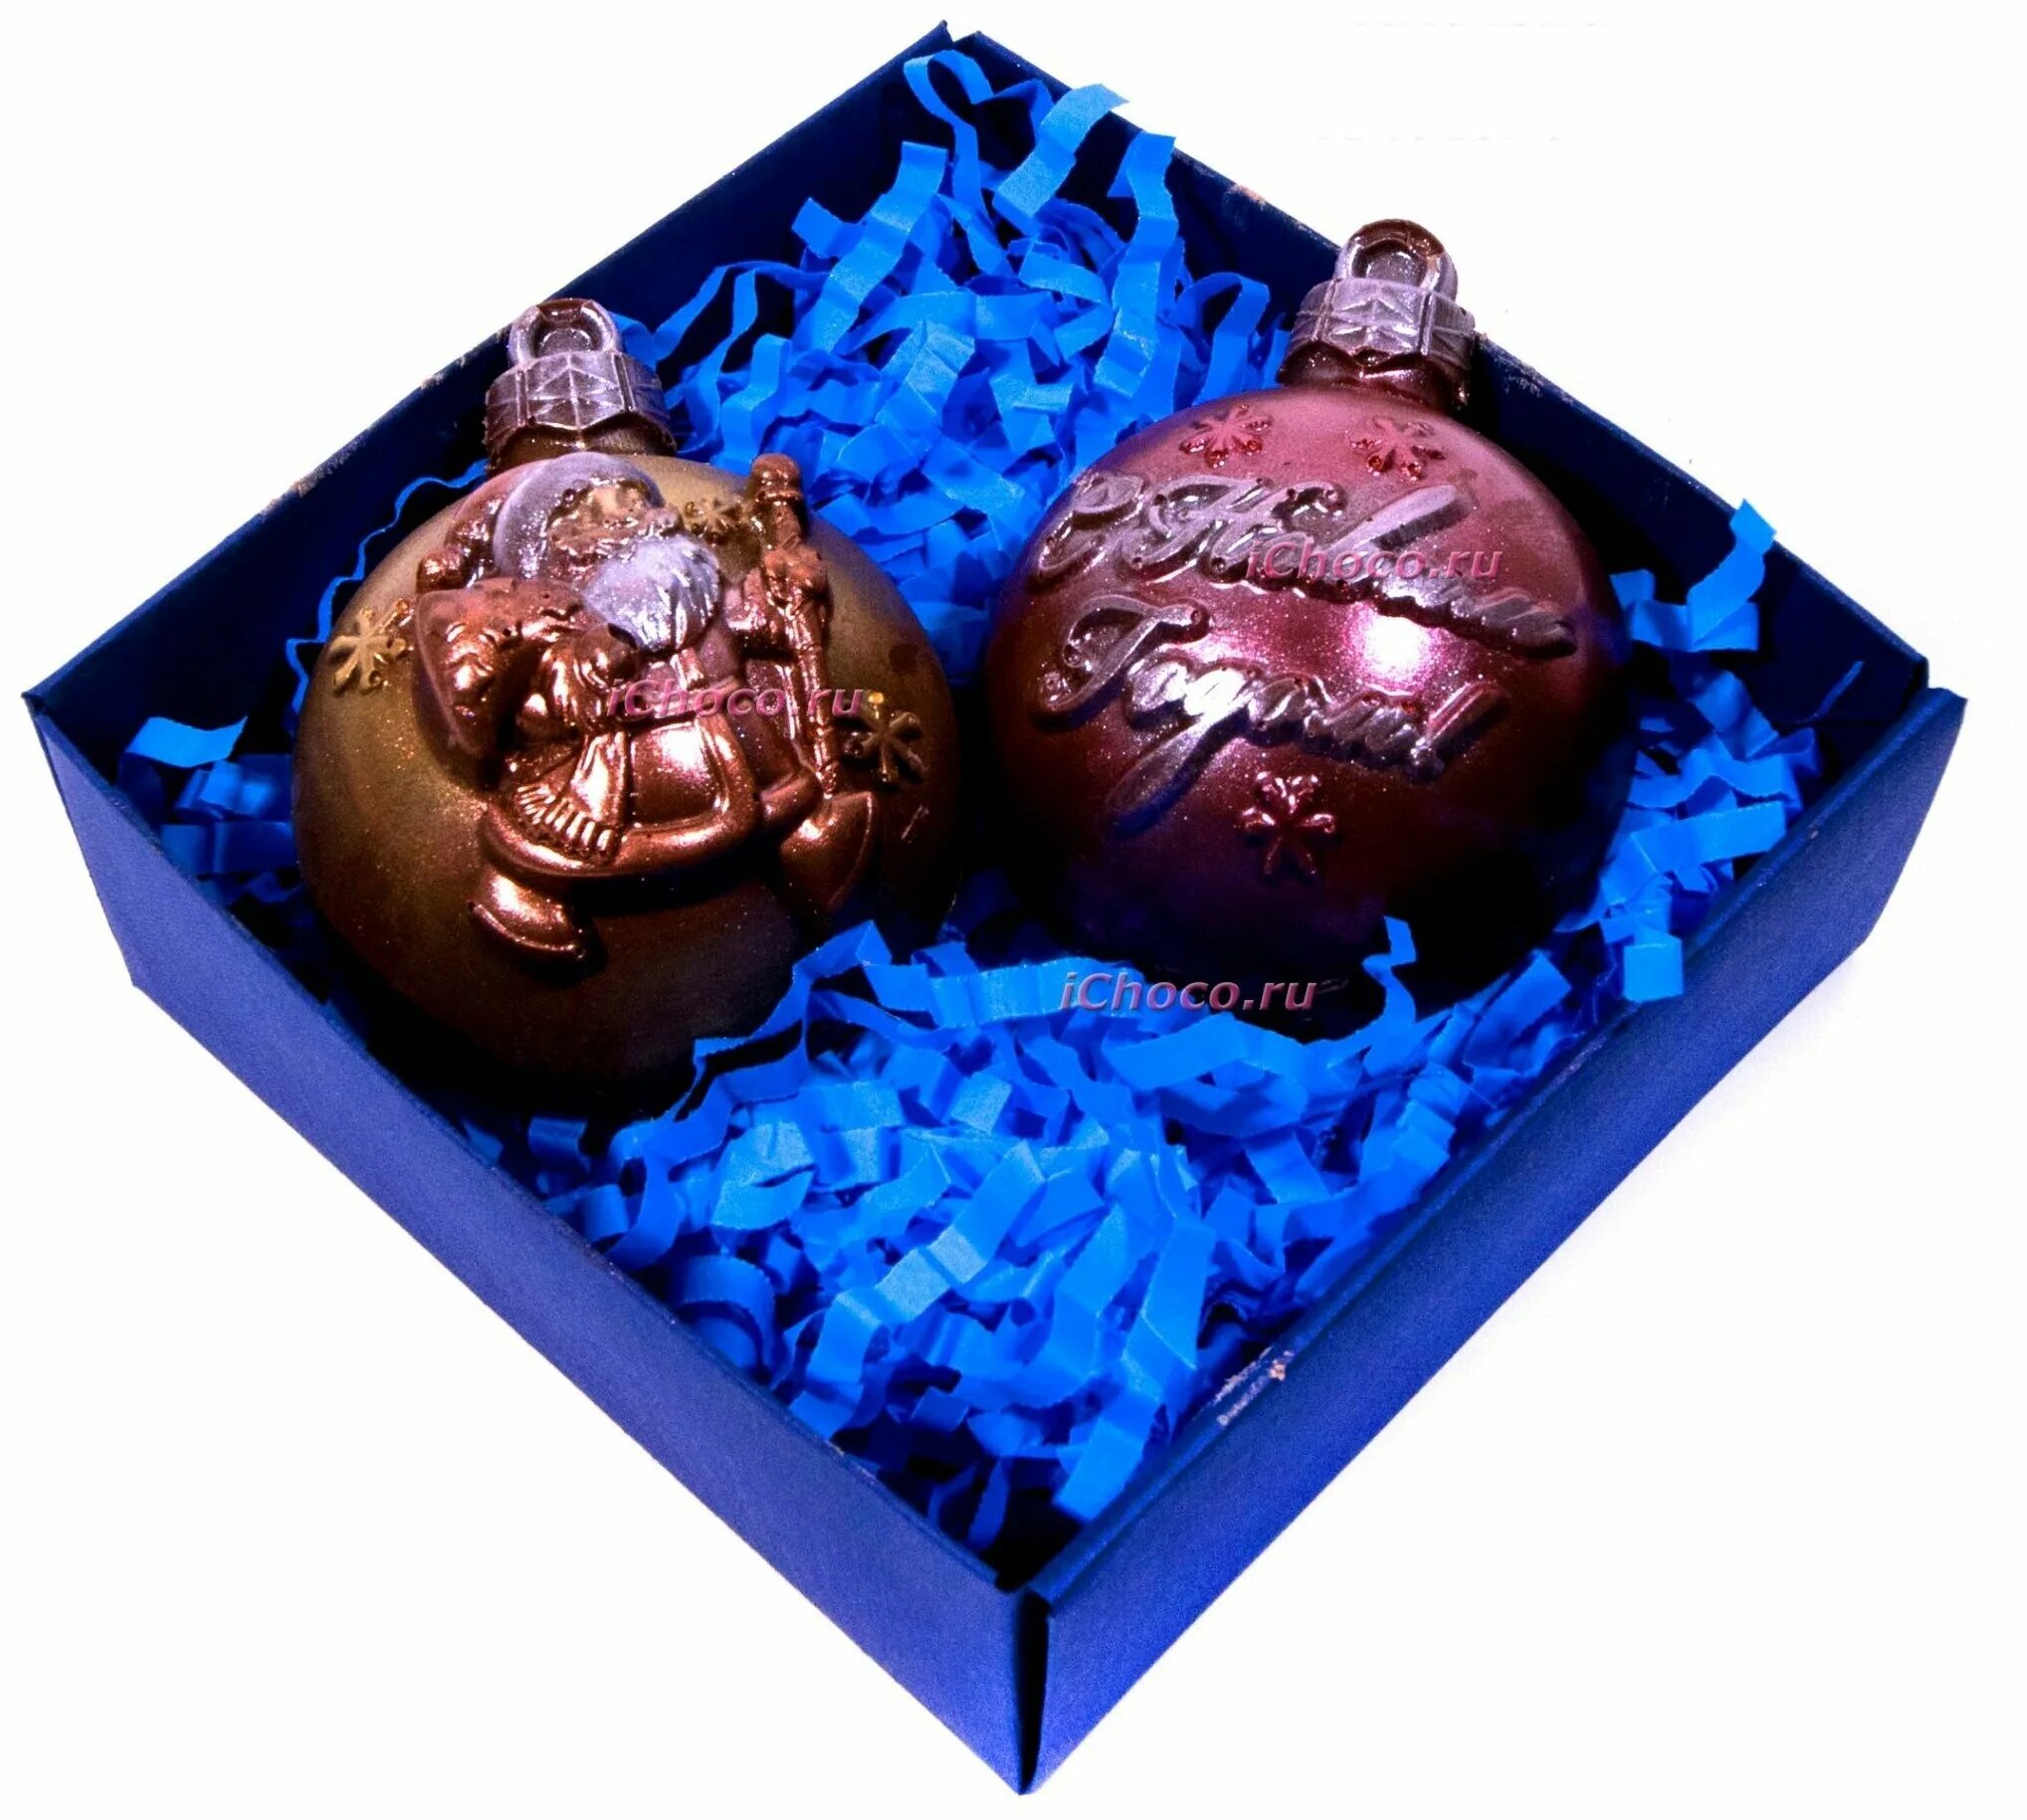 Купить новогодние шоколадные подарки. Шоколадные новогодние шары. Новогодние шоколадные фигурки. Новогодние шары из шоколада. Шоколадные новогодние шарики.